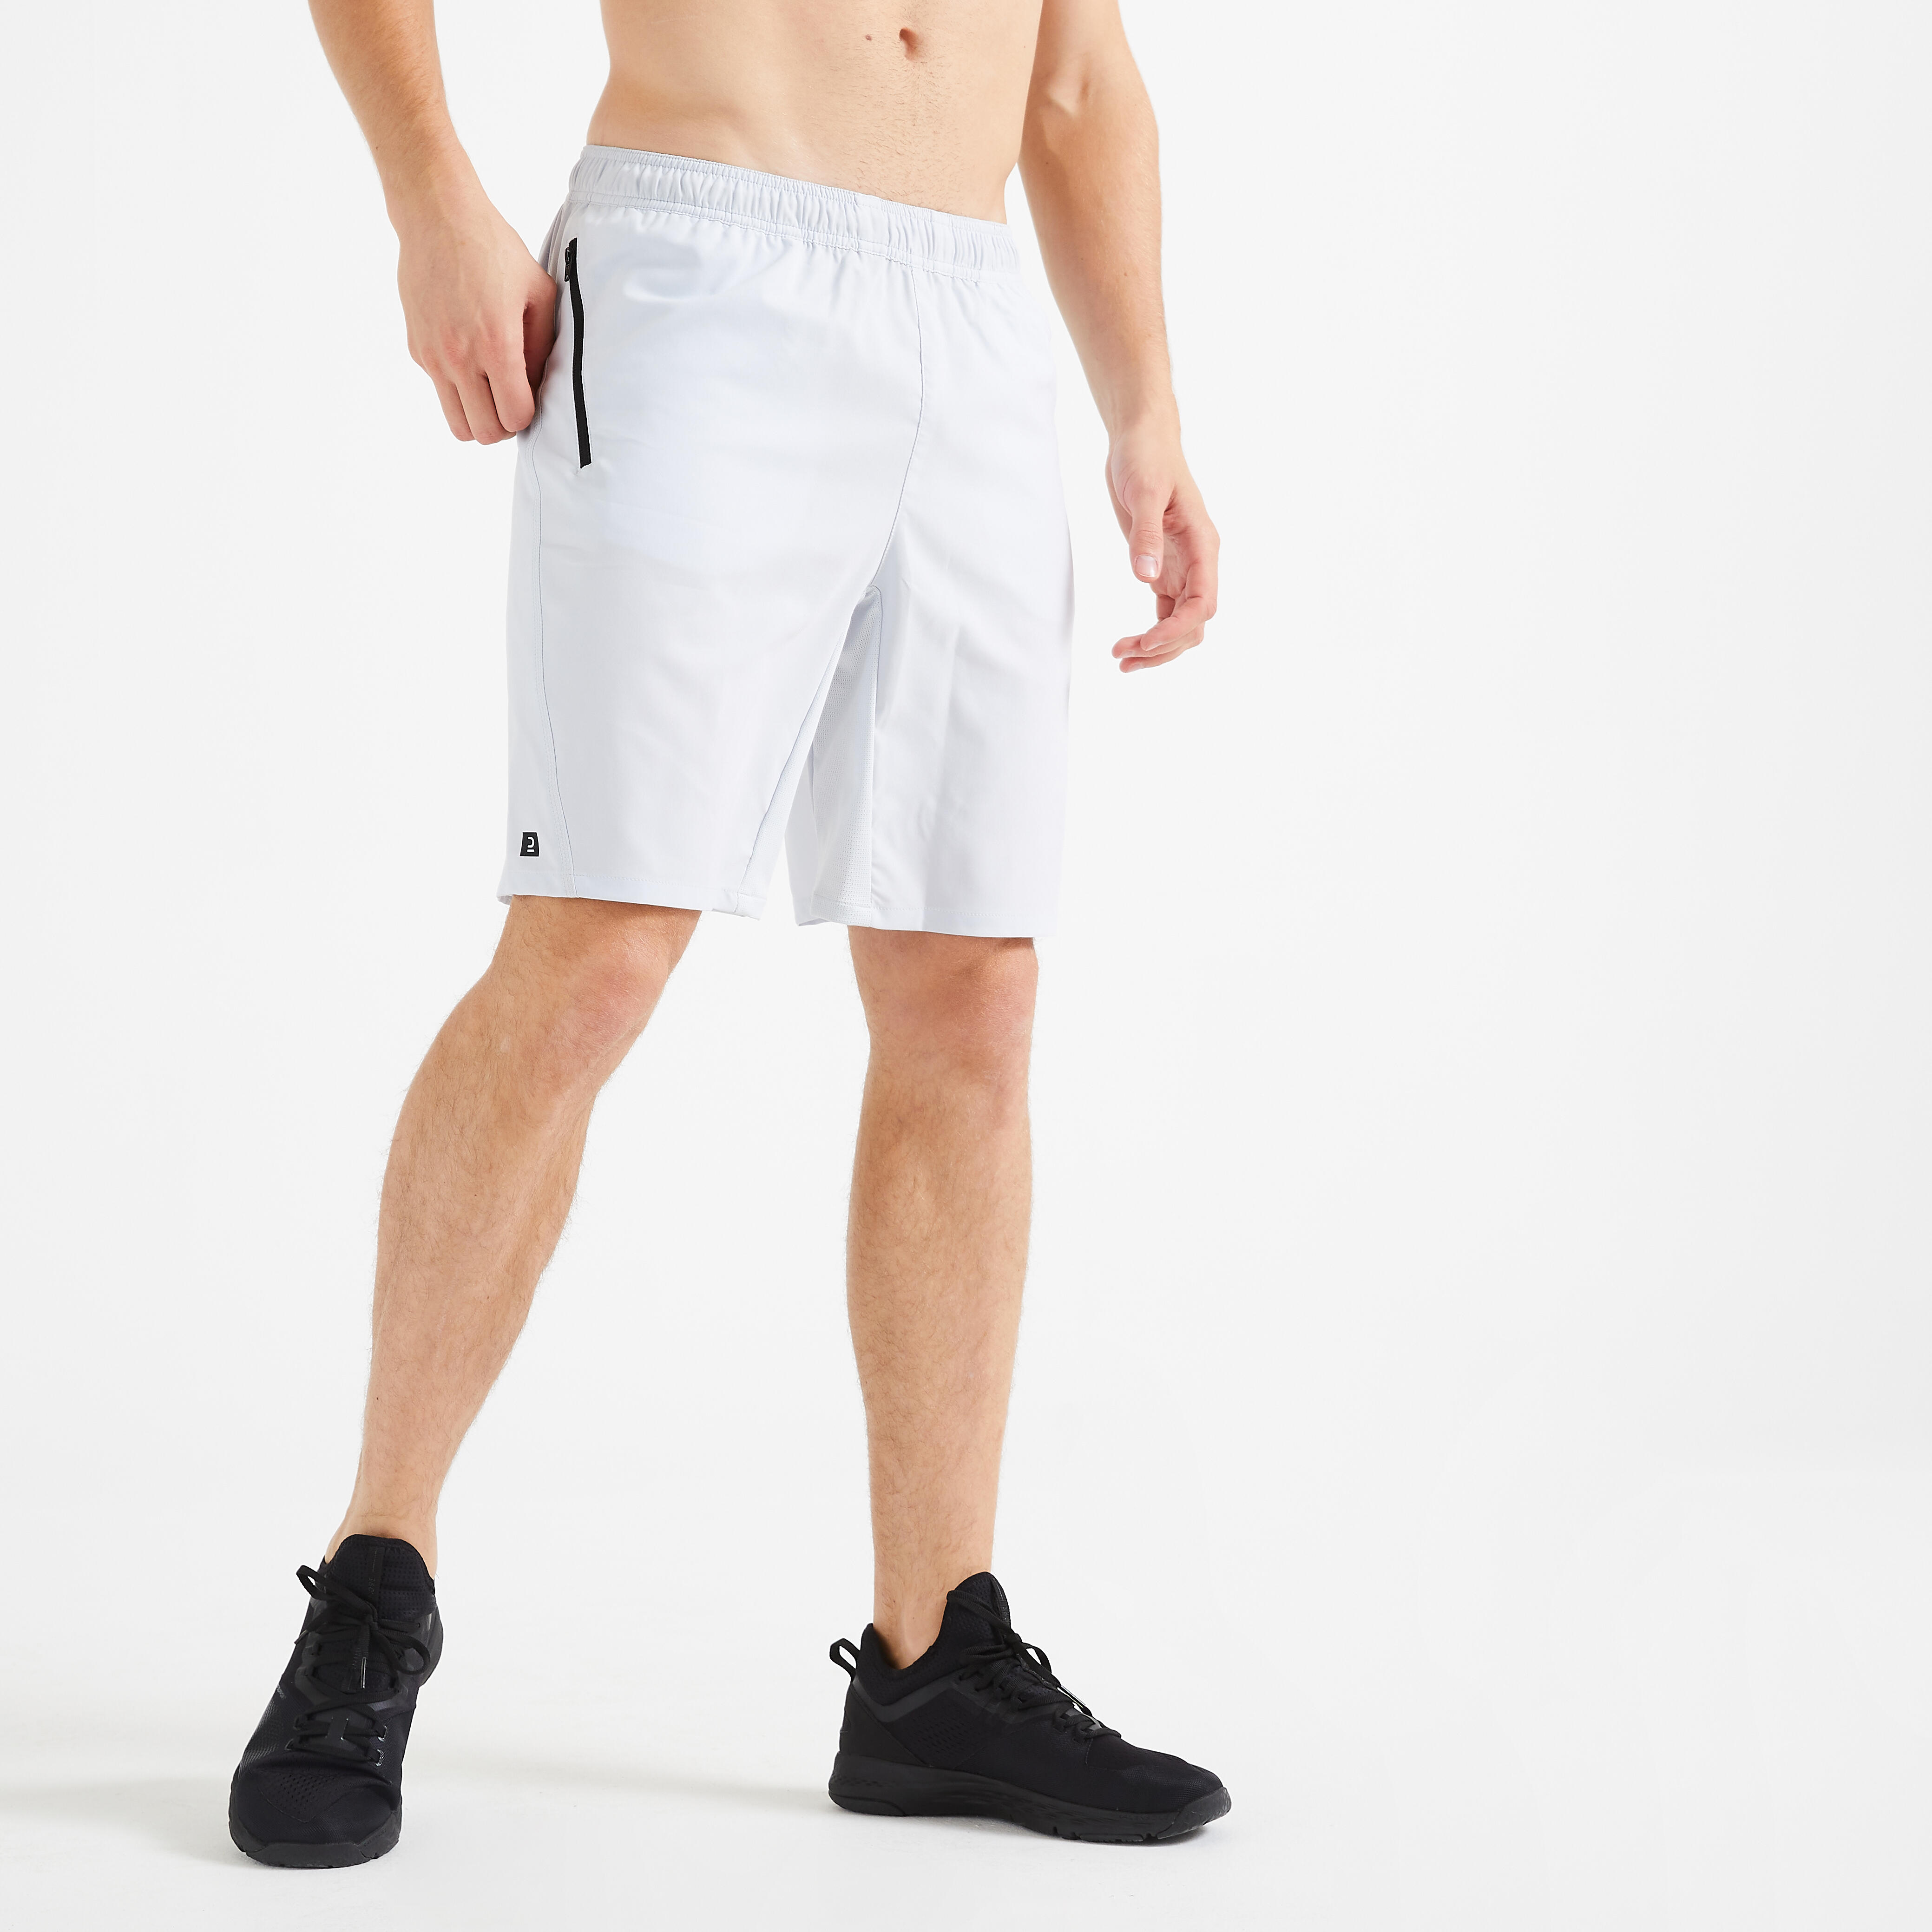 Pantalon scurt 120 Fitness cu buzunare și fermoar Alb Bărbați decathlon.ro  Imbracaminte fitness barbati